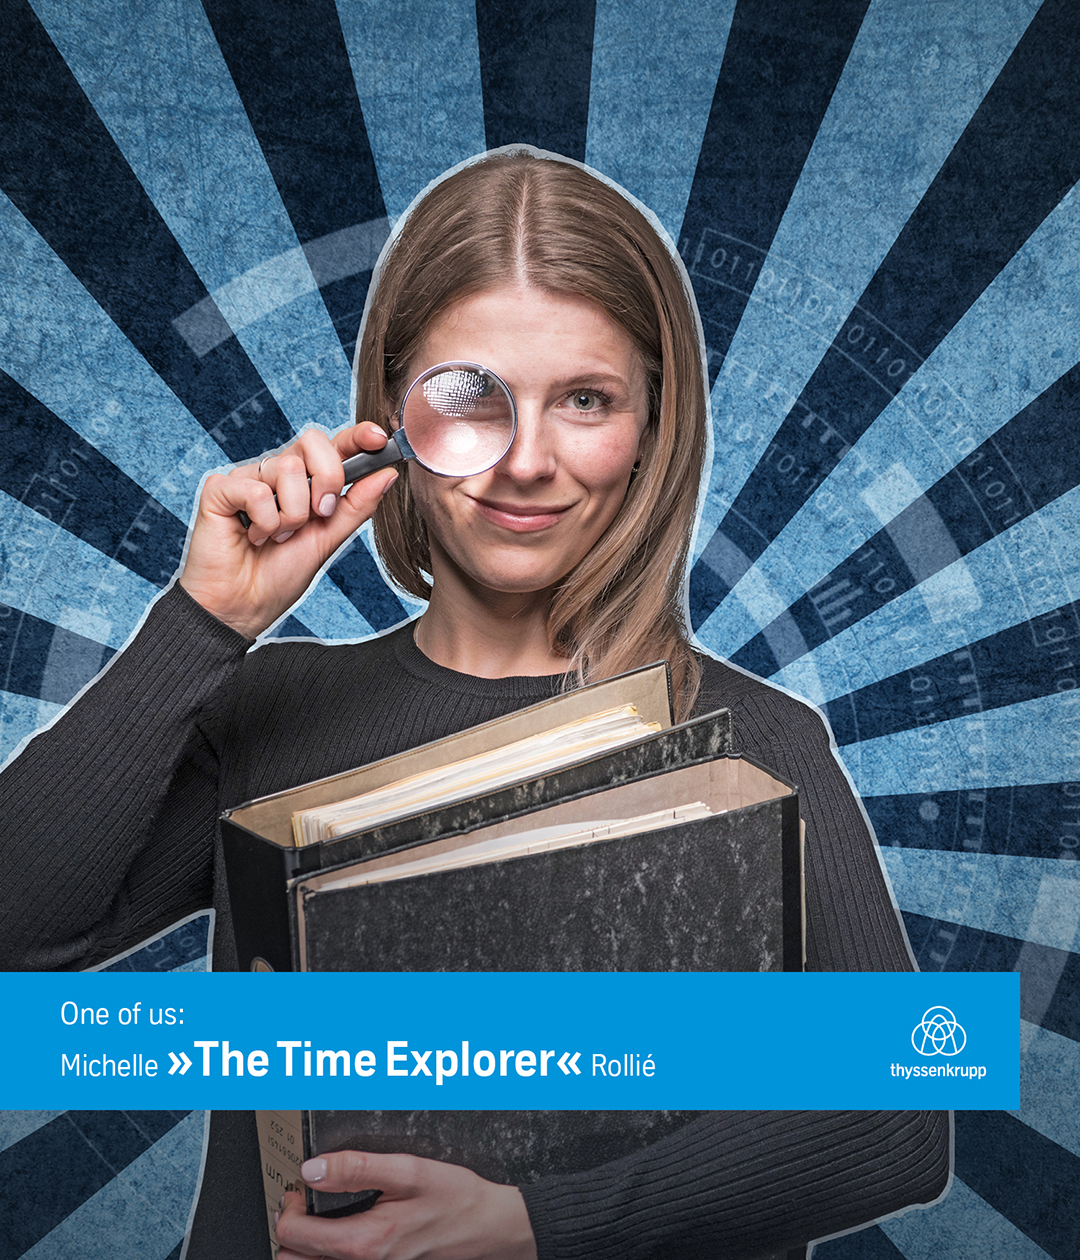 Michelle >>The Time Explorer<< Rollié >>Michelle Rollié<<